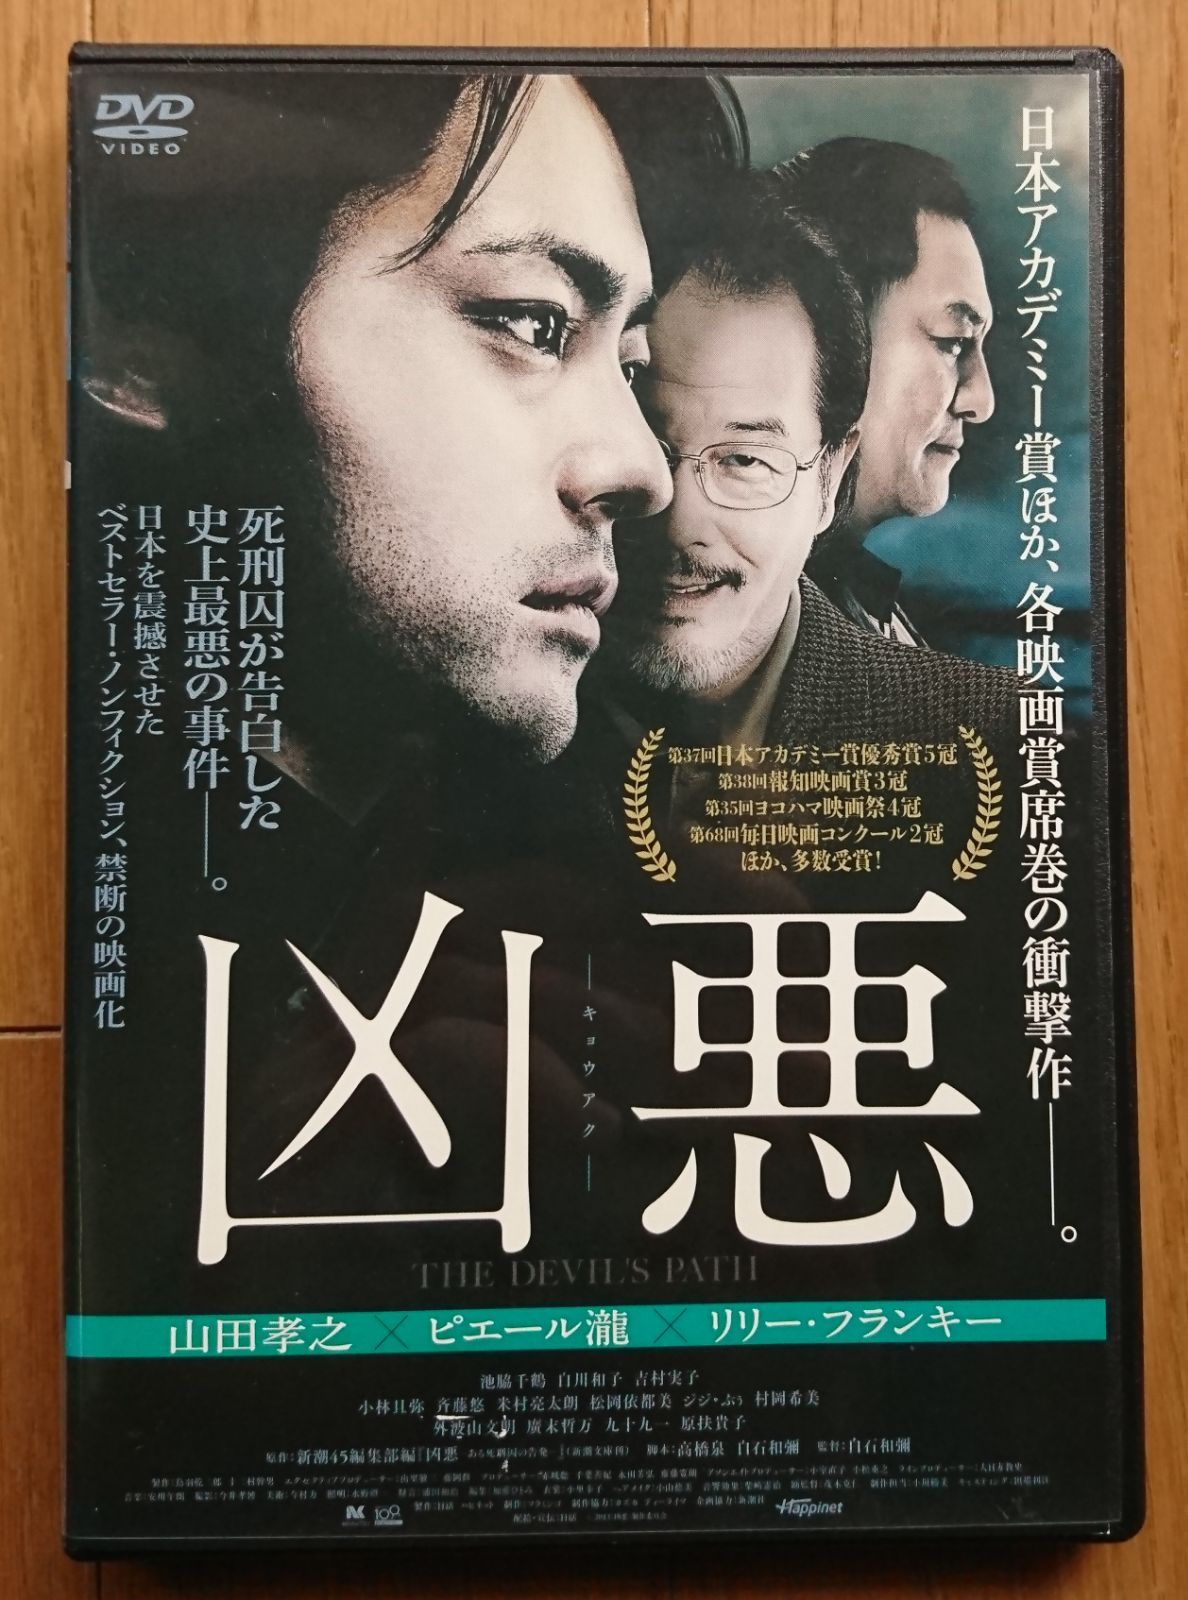 凶悪DVD山田孝之、ピエール瀧 - 邦画・日本映画